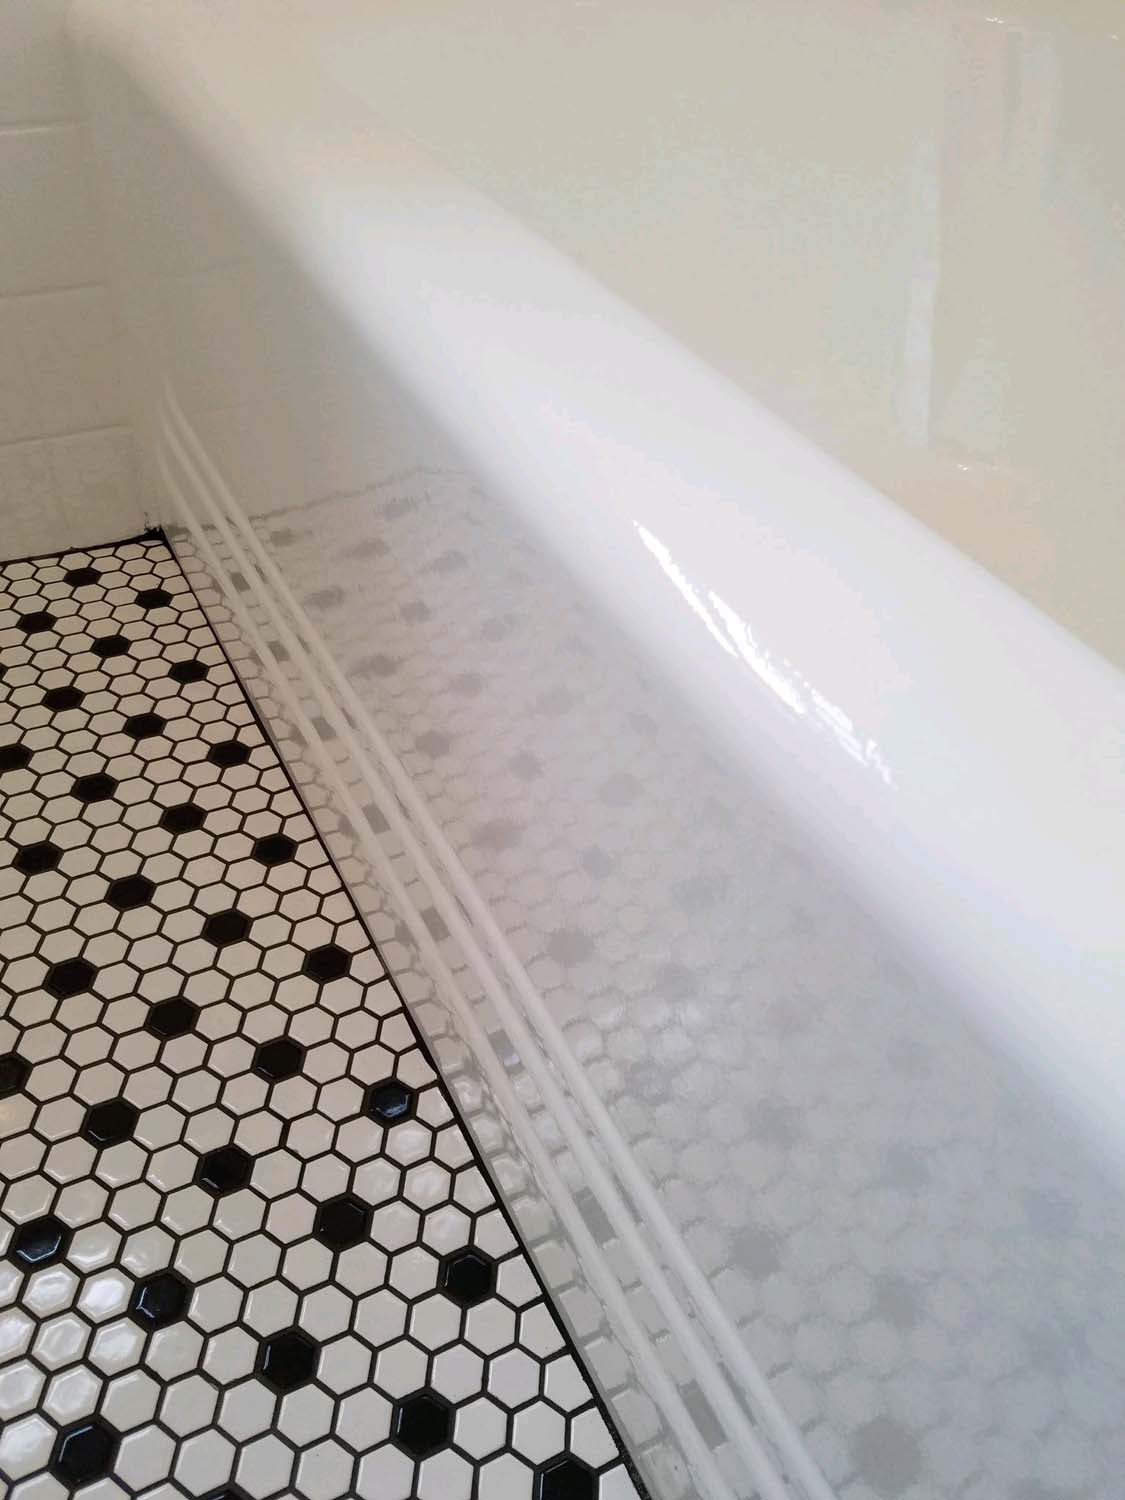 bathtub & tile floor